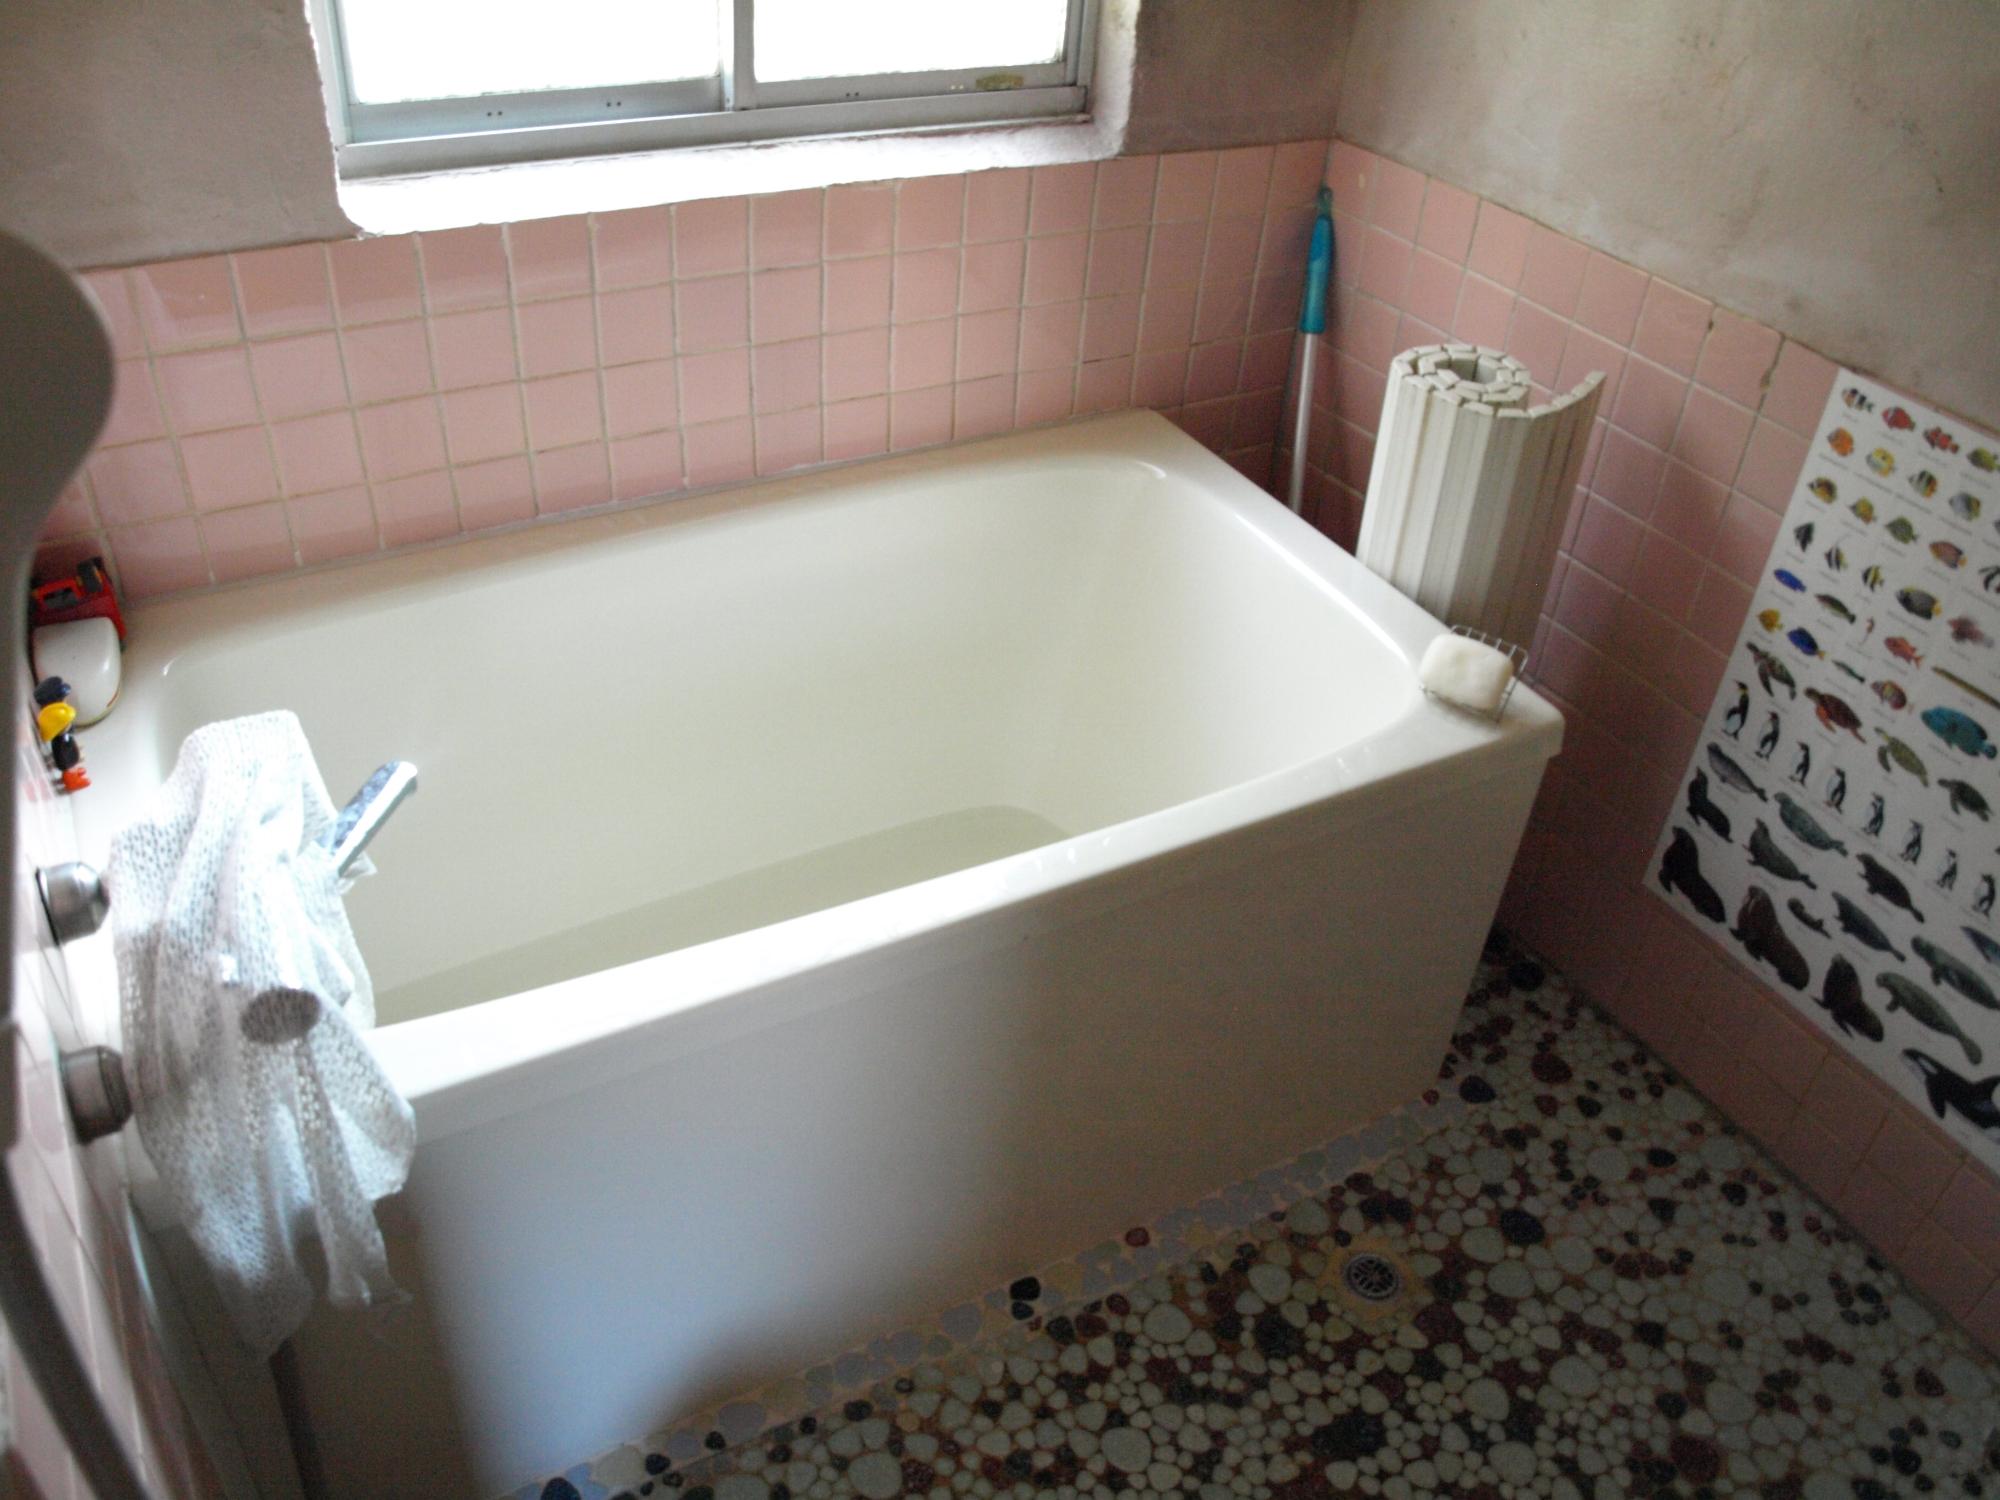 リフォーム後のお風呂を打つつぃた写真。浴槽が新しく、広くなっている。